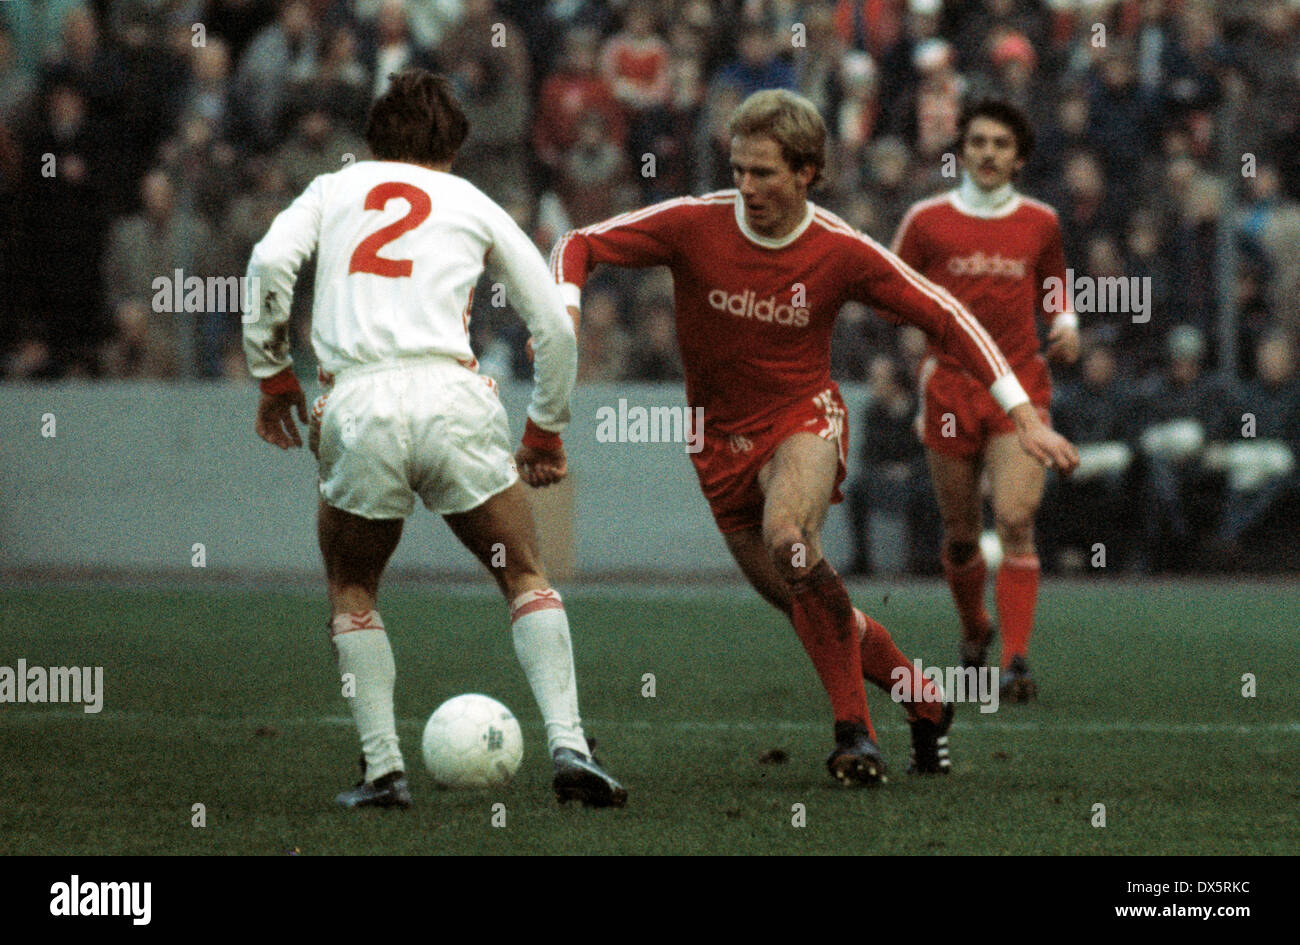 Football, Bundesliga, 1976/1977, Georg Melches Stadium, Rot Weiss Essen contre FC Bayern Munich 1:4, scène du match, les dribbles de Karl-Heinz Rummenigge (FCB), à gauche un joueur de la défense d'Essen, derrière Jupp Kapellmann (FCB) Banque D'Images